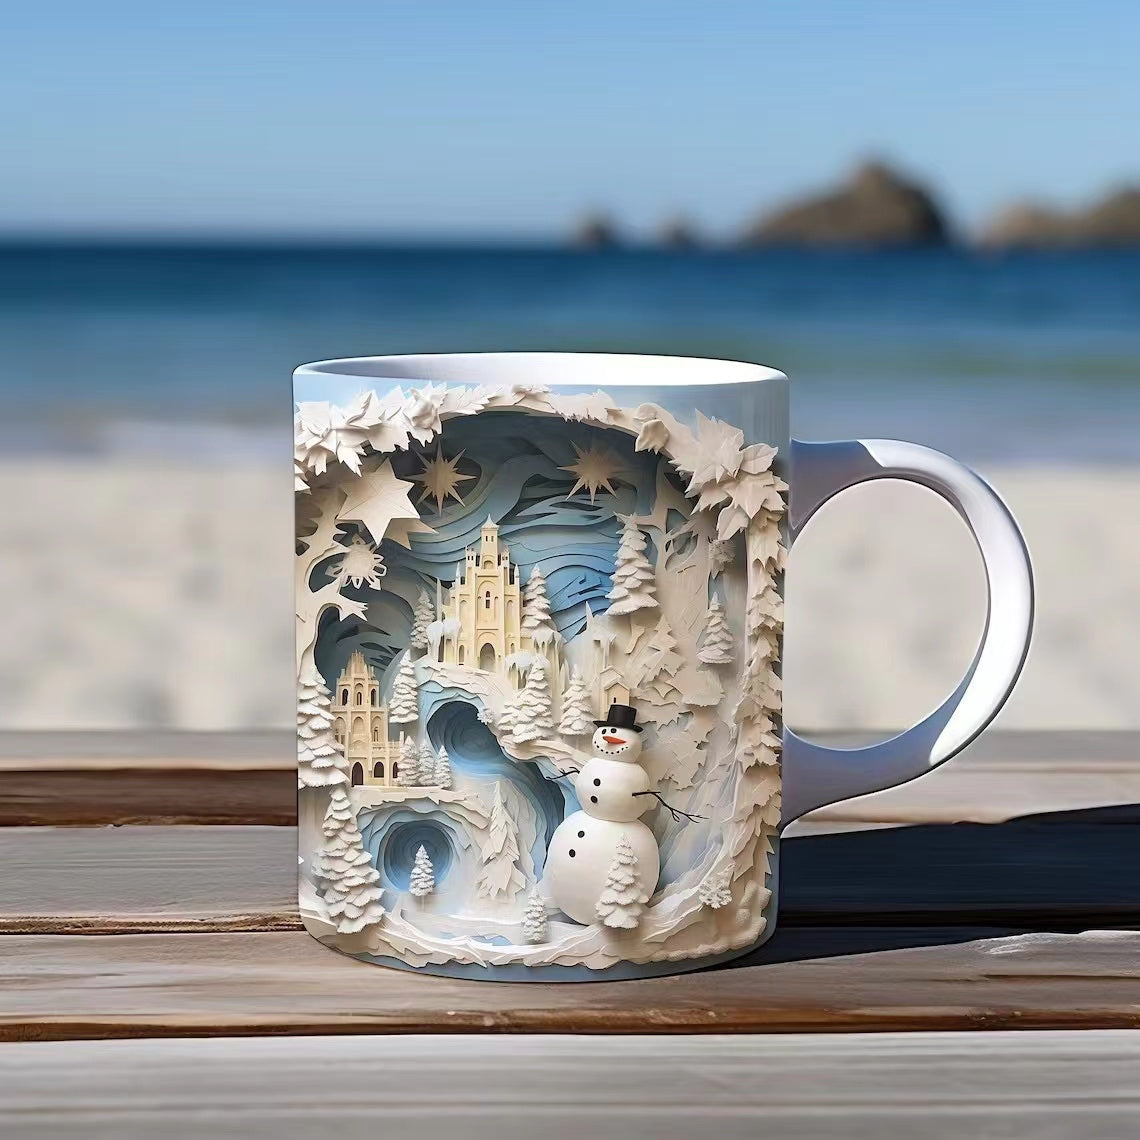 DOGDD™ 3D Bookshelf Mug